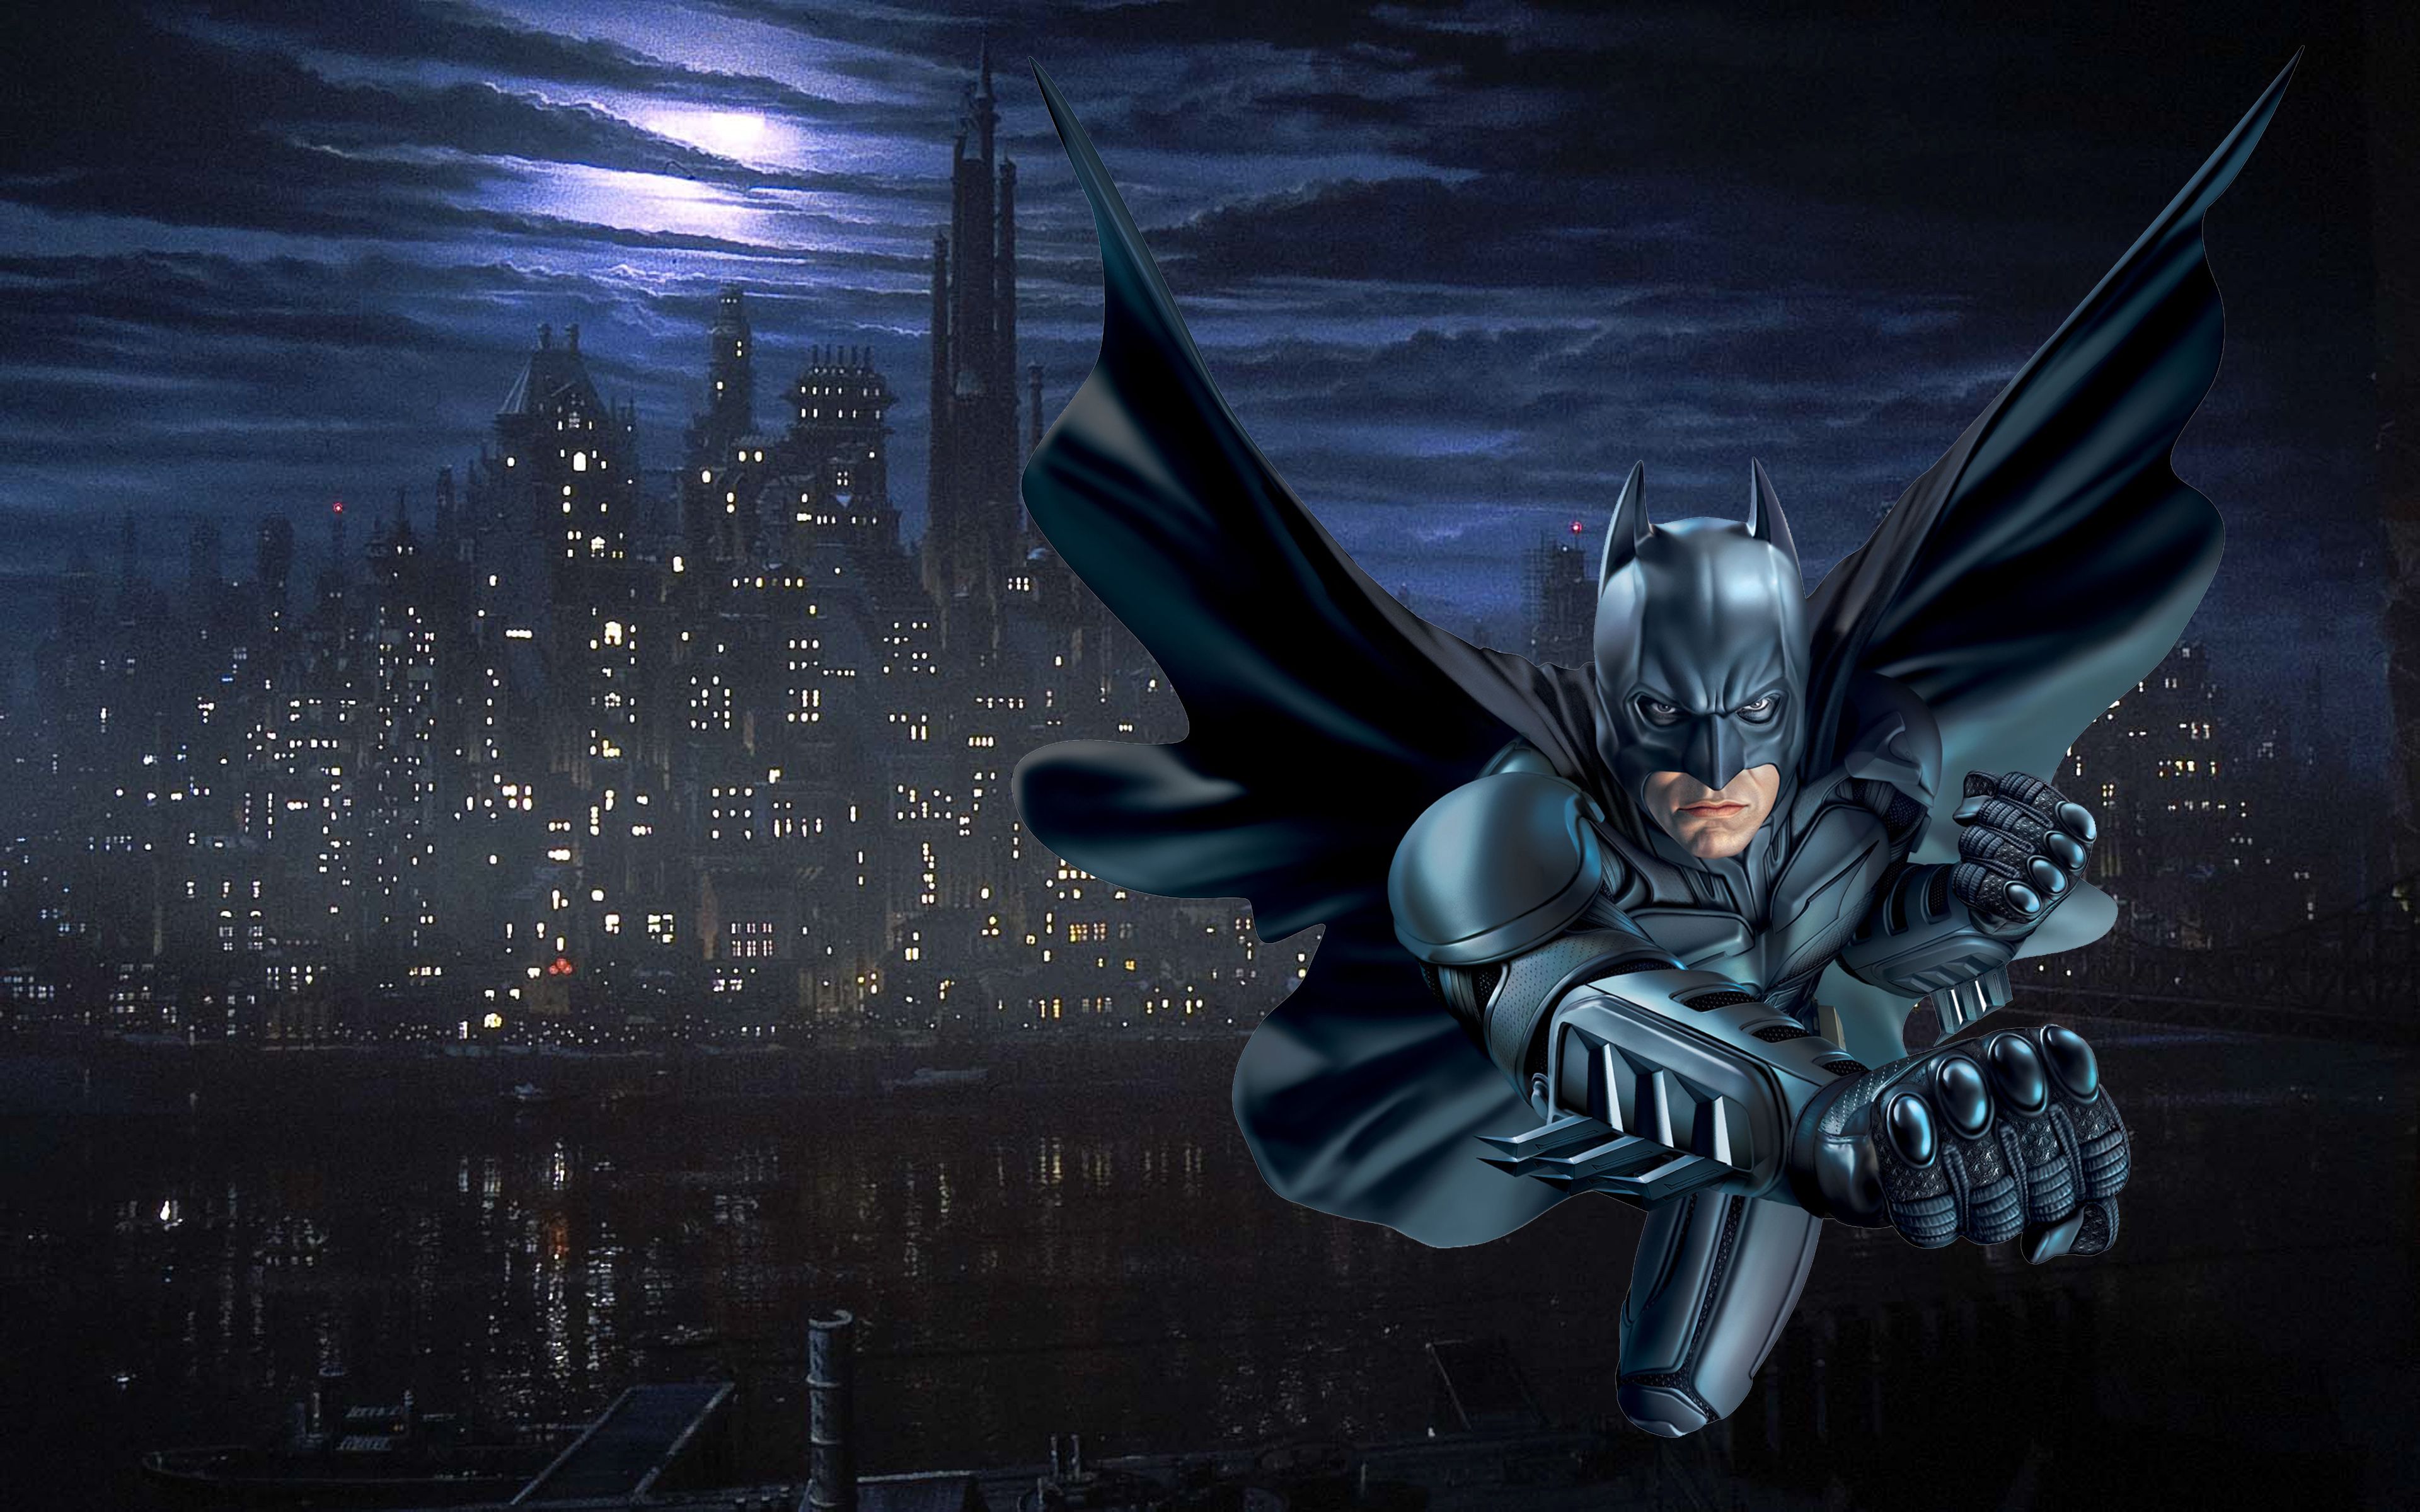 Batman Gotham City New Desktop Wallpaper Free Download 3840x2400, Wallpaper13.com